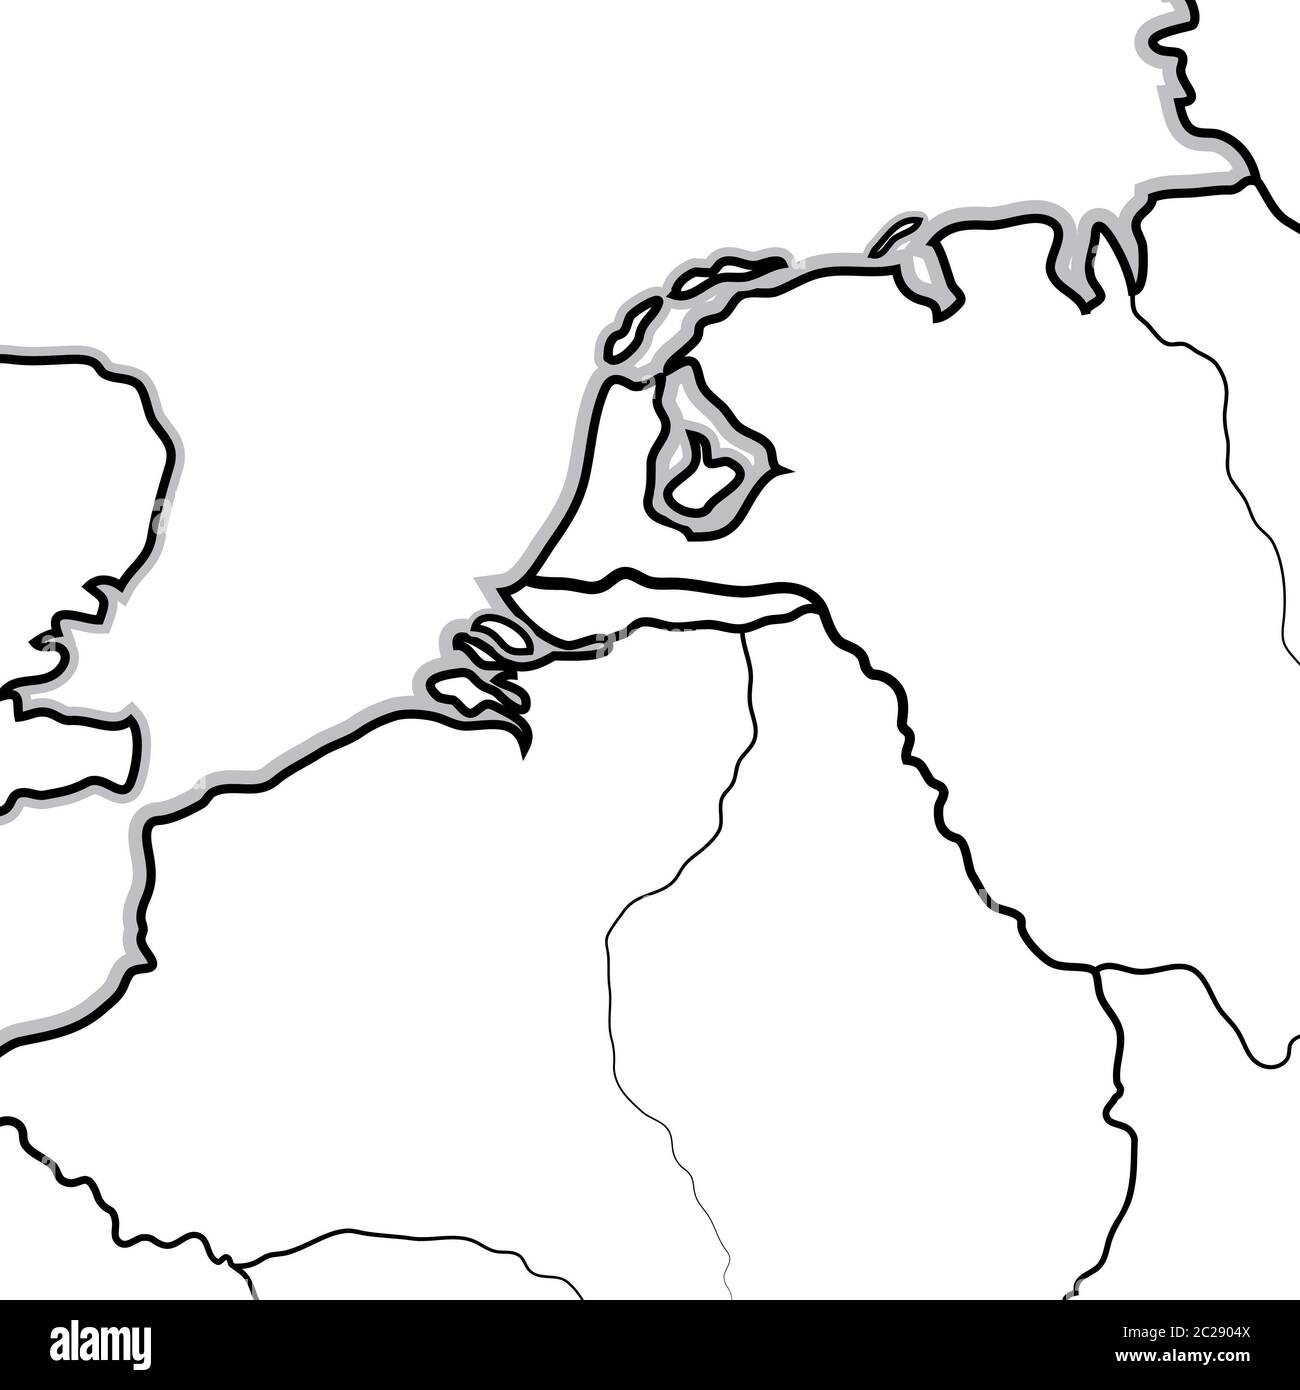 Carte des pays-Bas: Pays-Bas, Belgique, Luxembourg (Benelux). Carte géographique. Banque D'Images